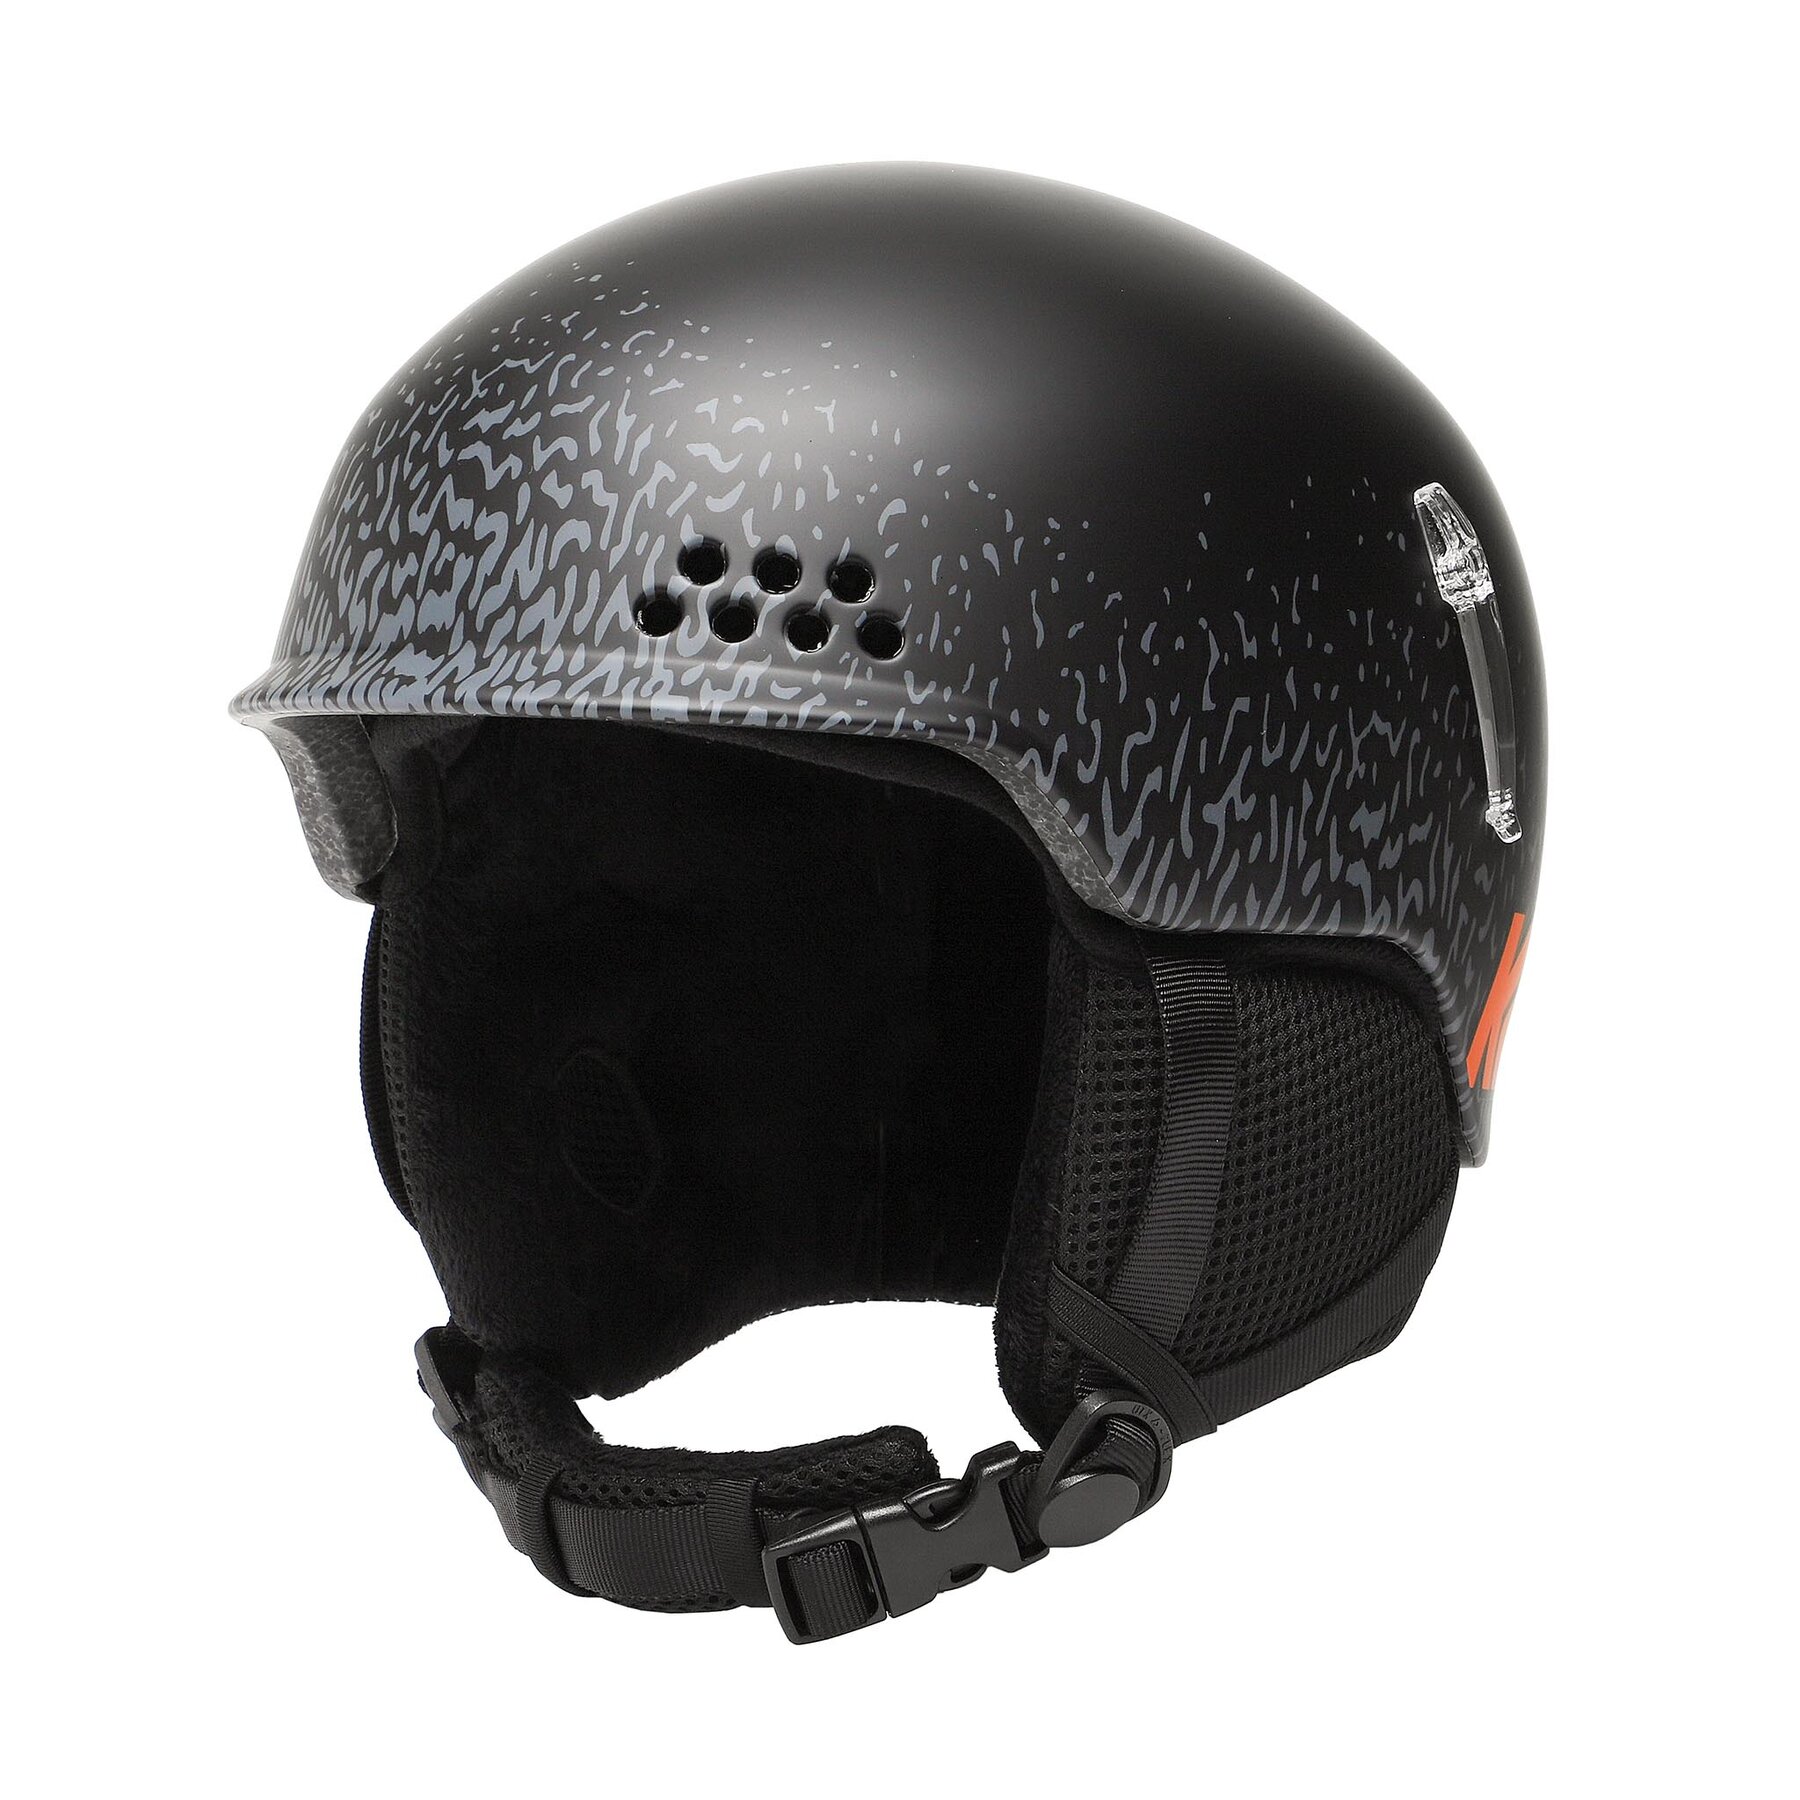 K2 Illusion Eu Helmet Black - Cascos de esquí